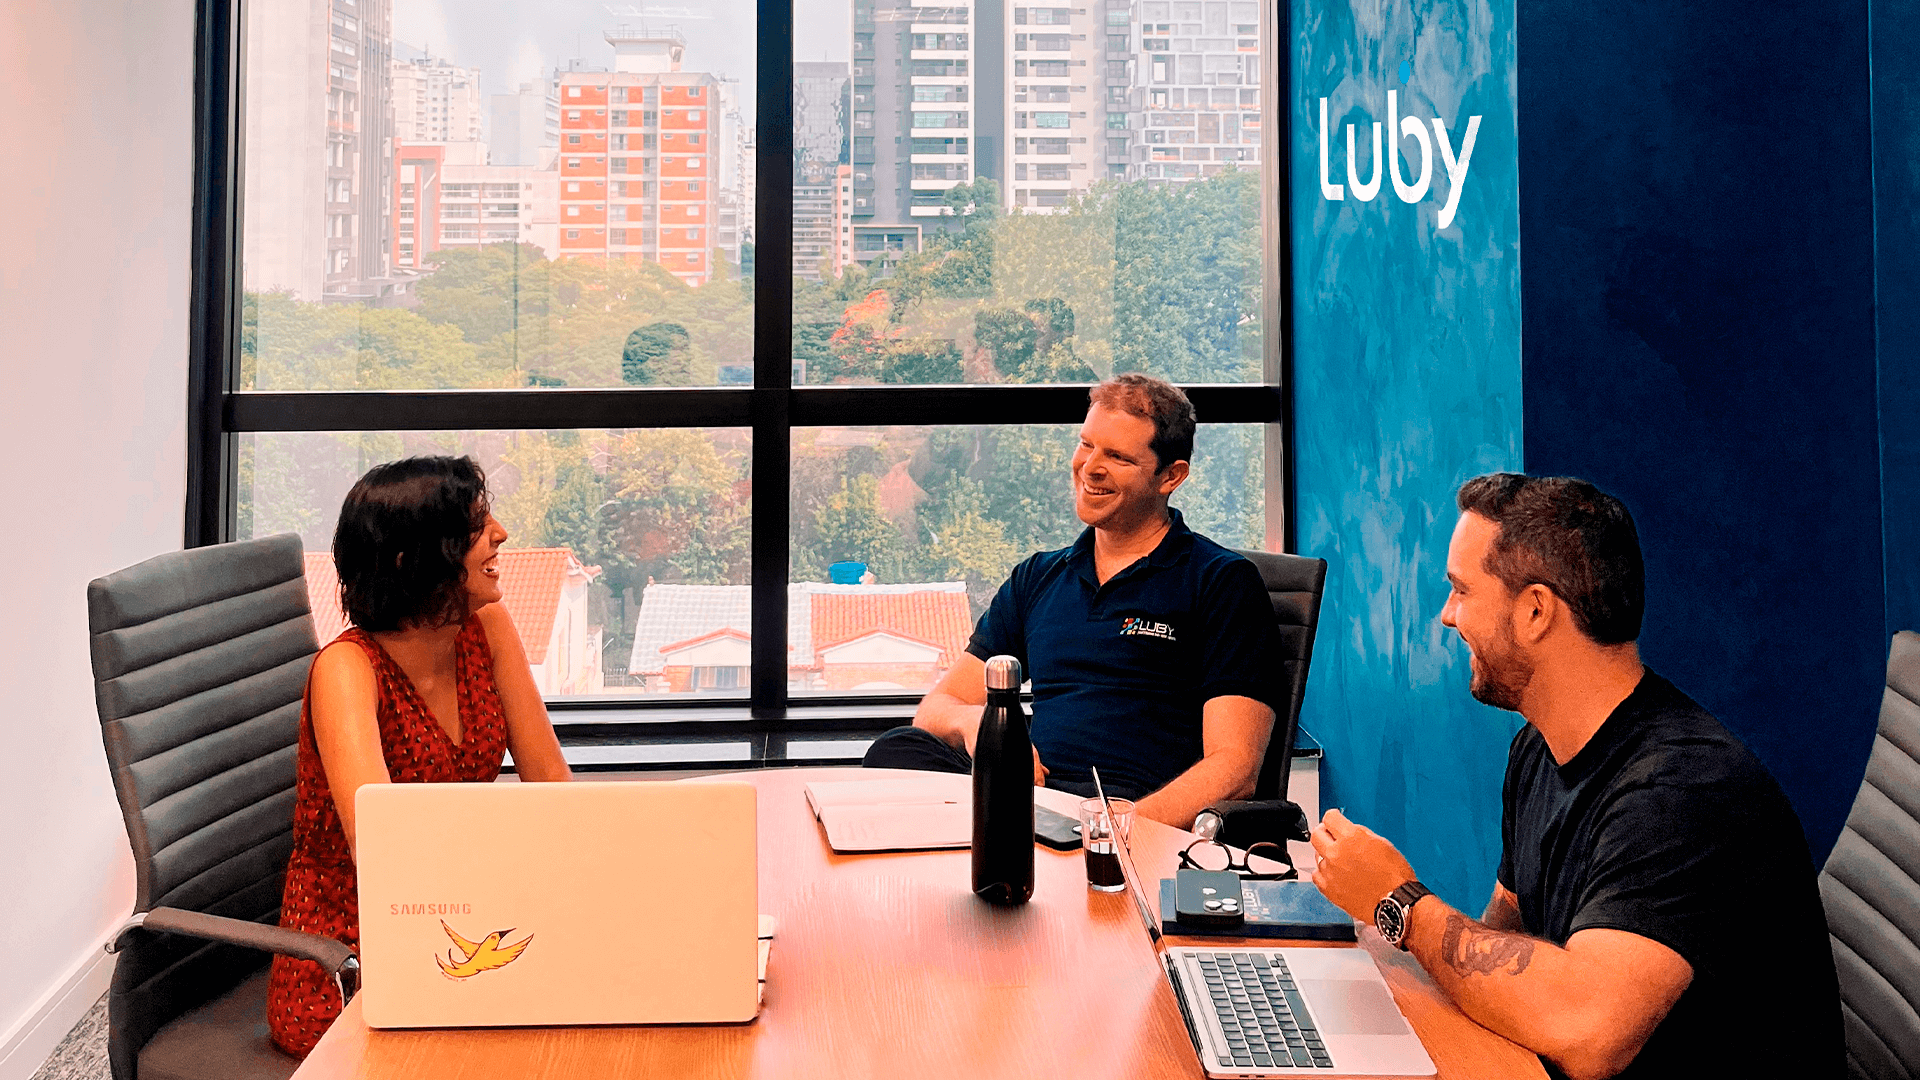 Profissionais da Luby, empresa de tecnologia, reunidos na sede da empresa conversando sobre negócios.